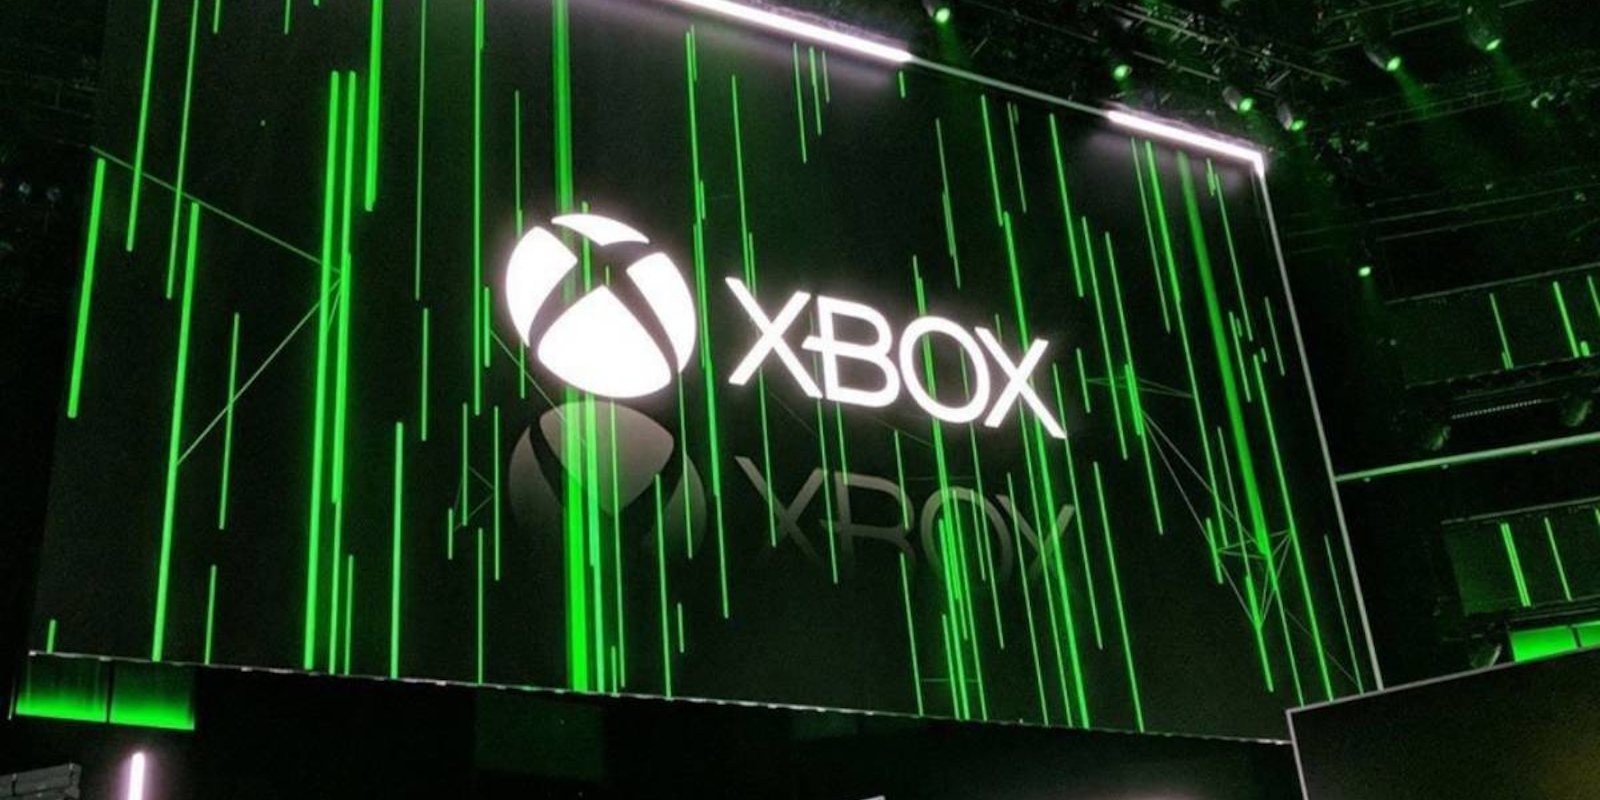 Xbox sí asistirá al E3 2020 después de que PlayStation dijera que no iba, asegura Phil Spencer